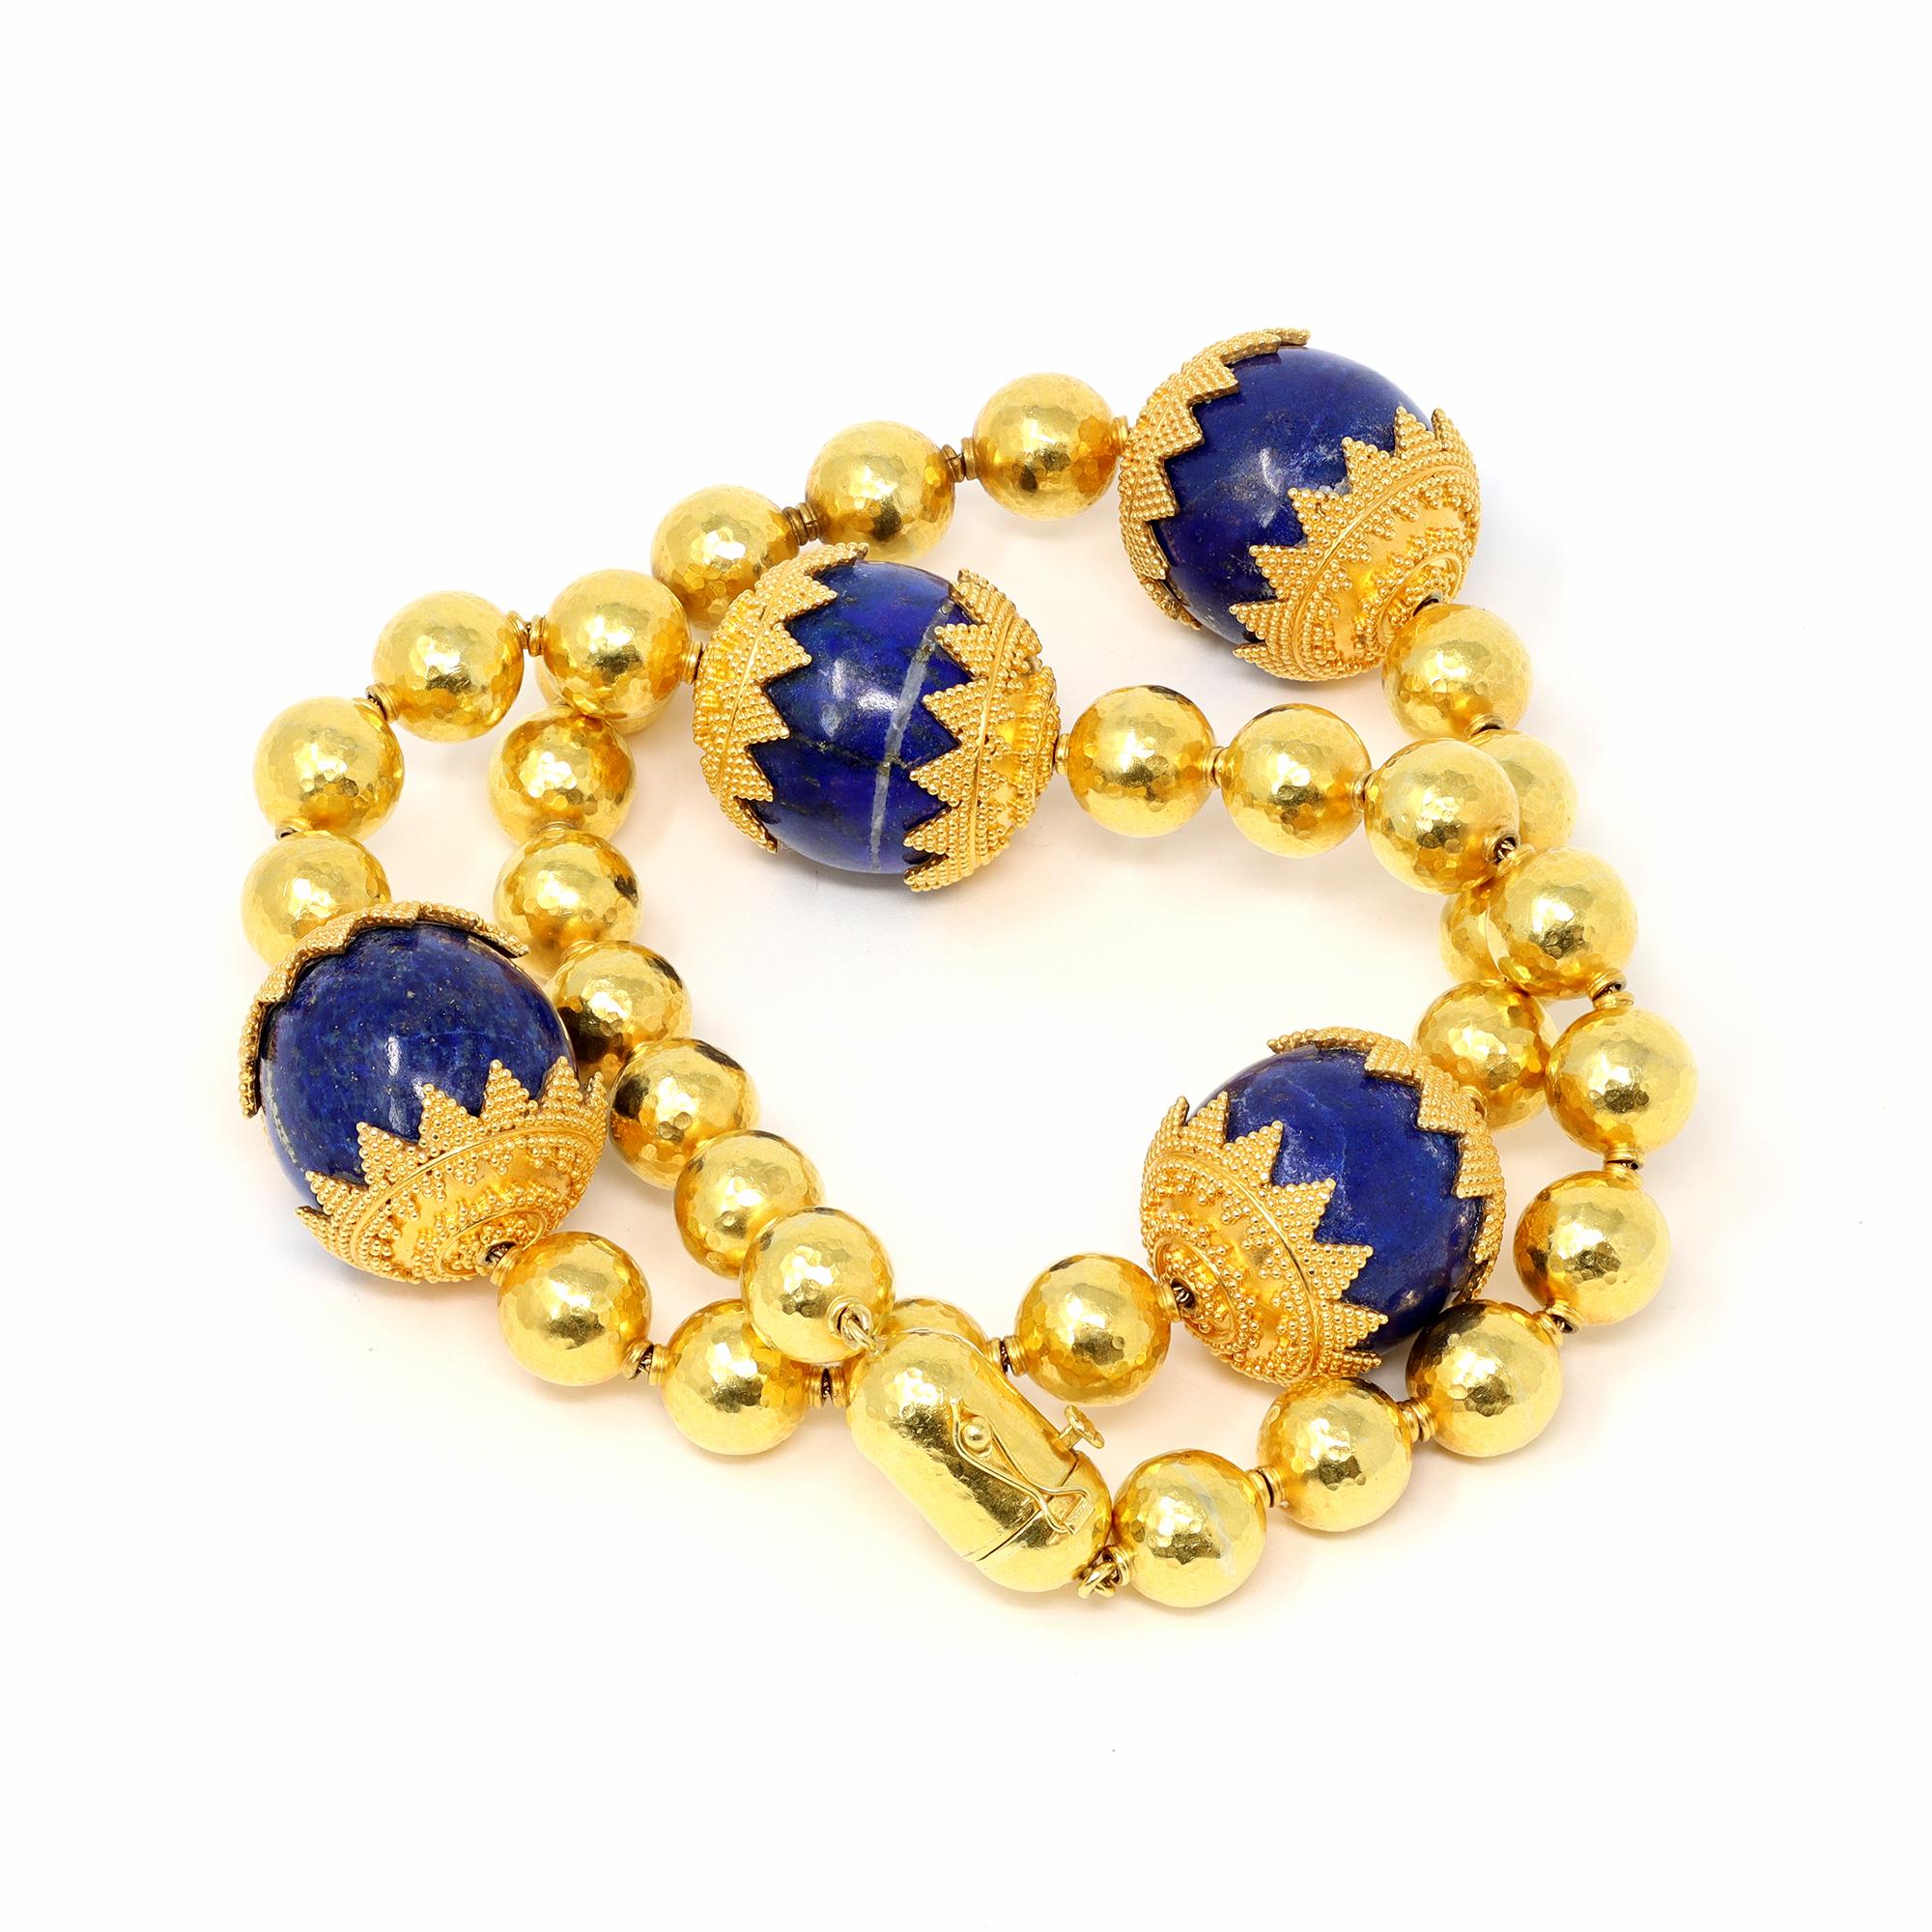 Eine spektakuläre Halskette um 1970, bestehend aus vier Lapislazuli-Perlen, die an jedem Ende mit einer goldenen Maserung versehen sind, unterbrochen von  gehämmerte Goldperlen. Das Bruttogewicht 144,1 Gramm mit einer Länge von 18¾  zoll, eine